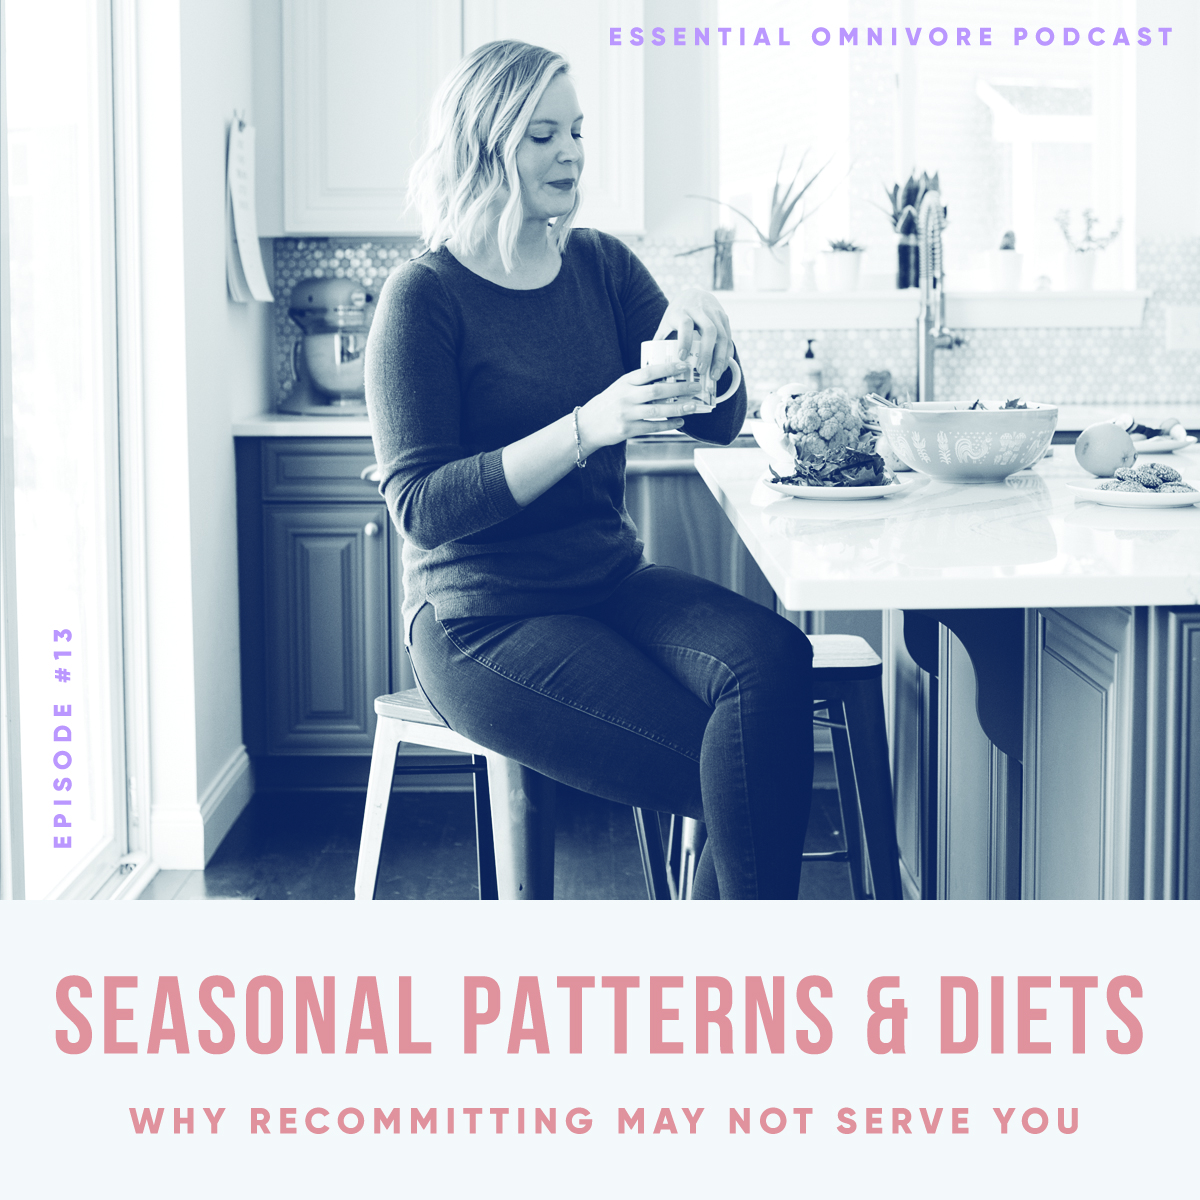 Seasonal Patterns of Diets